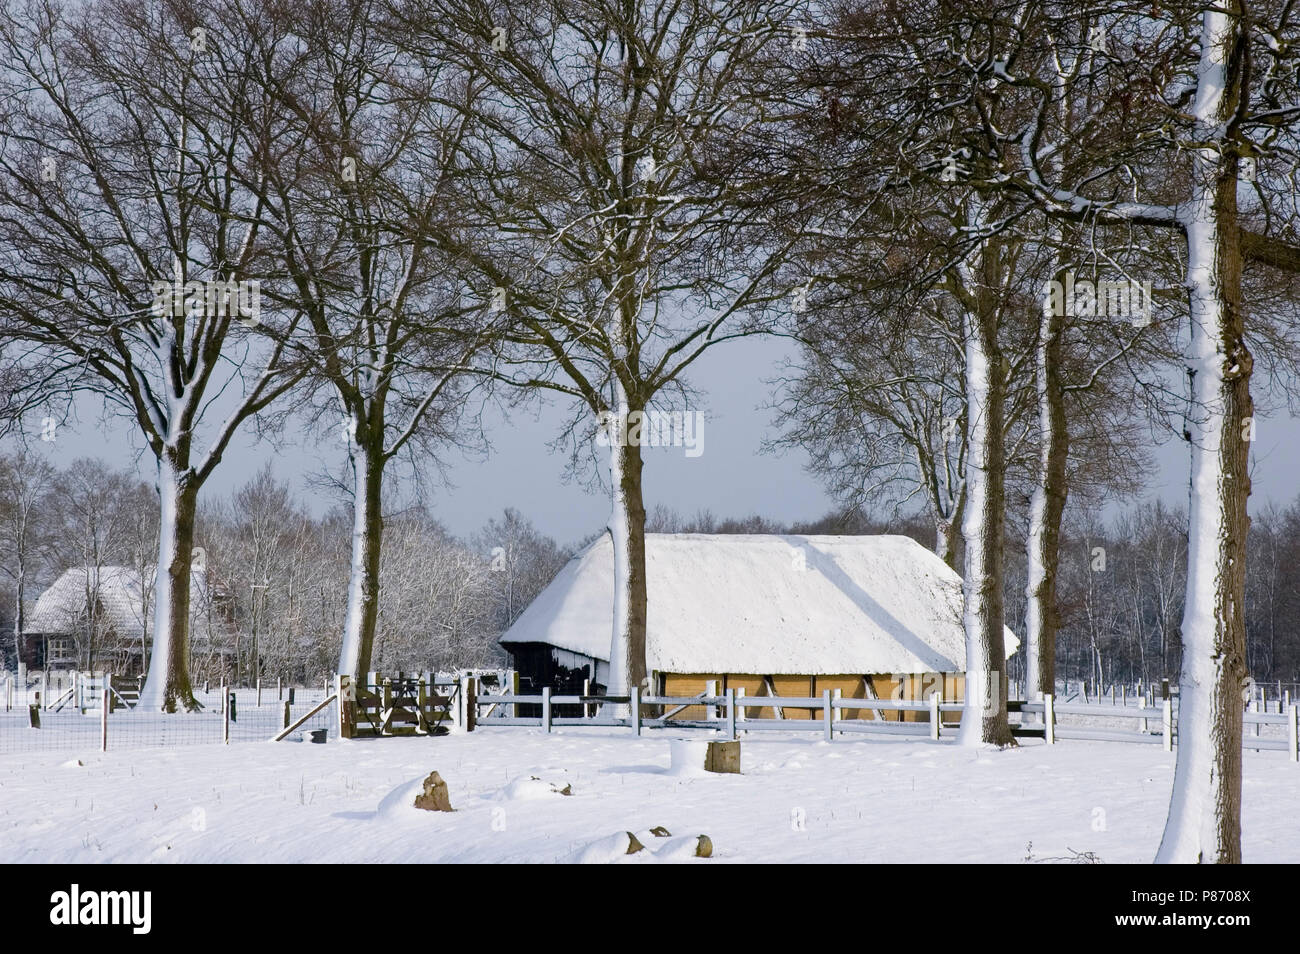 Schaapskooi in de winter; Sheep barn in winter Stock Photo